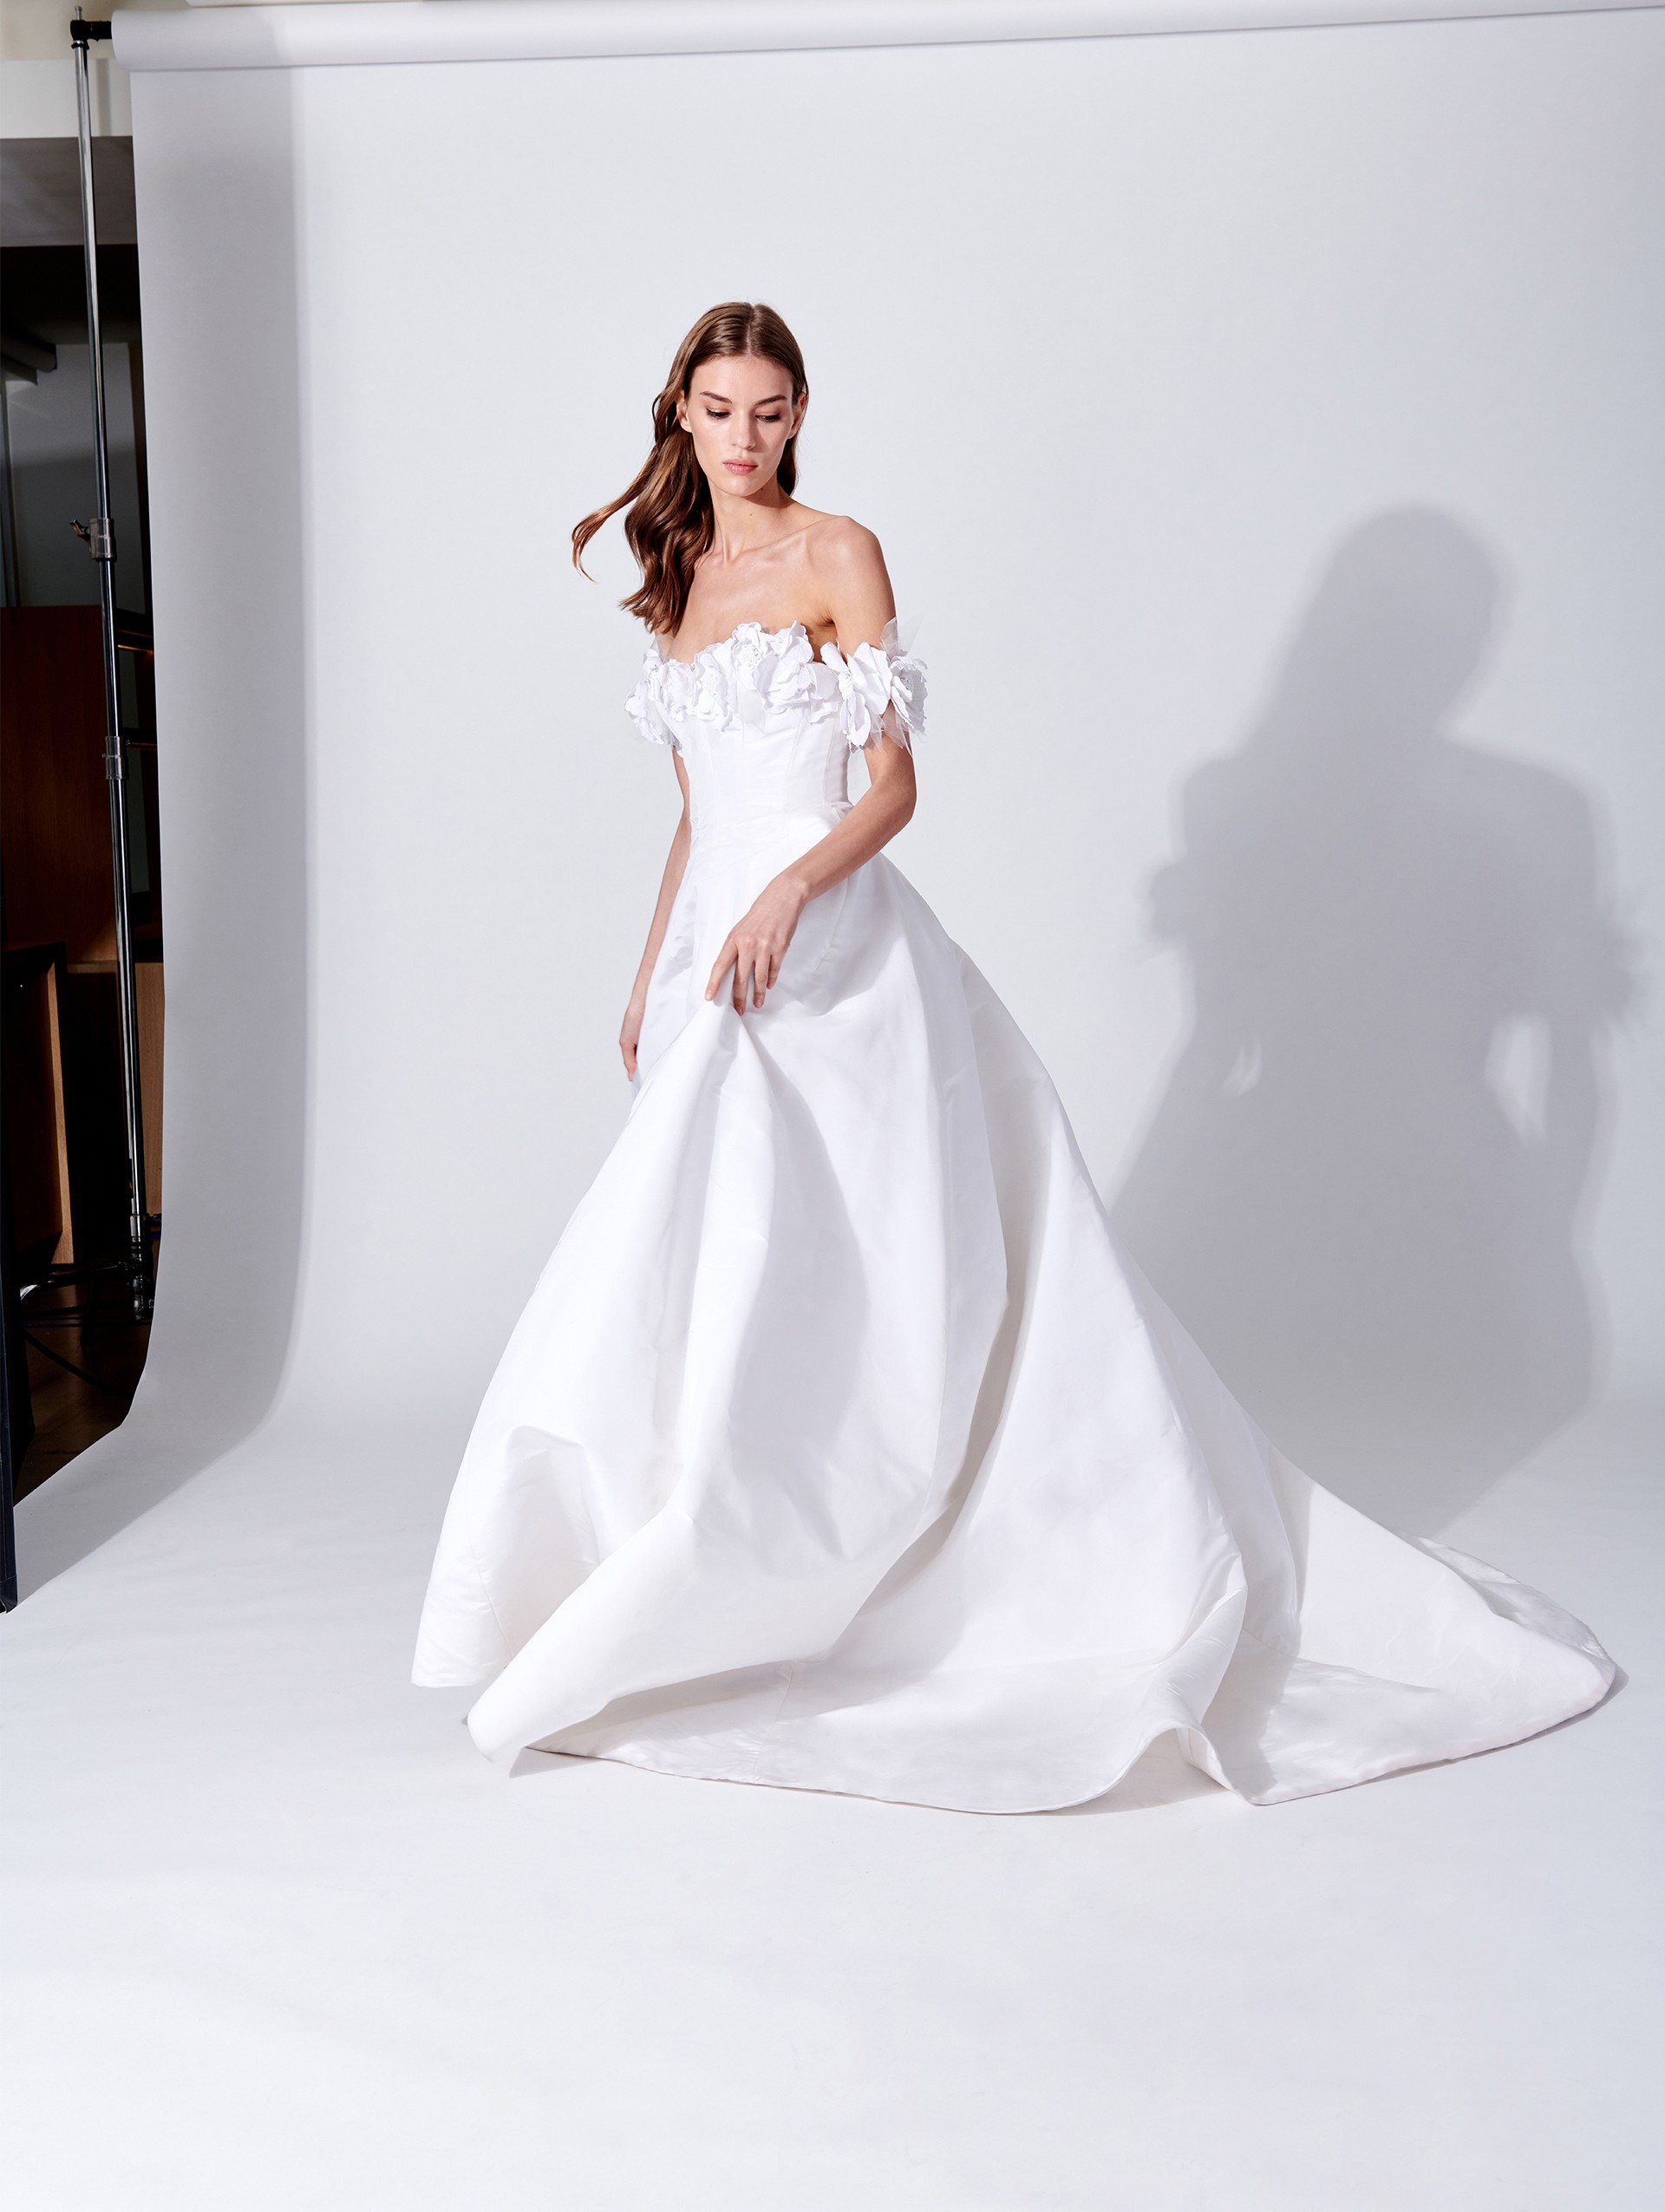 Il romanticismo moderno della nuova collezione di abiti da sposa Oscar De La Renta 2019 [FOTO]